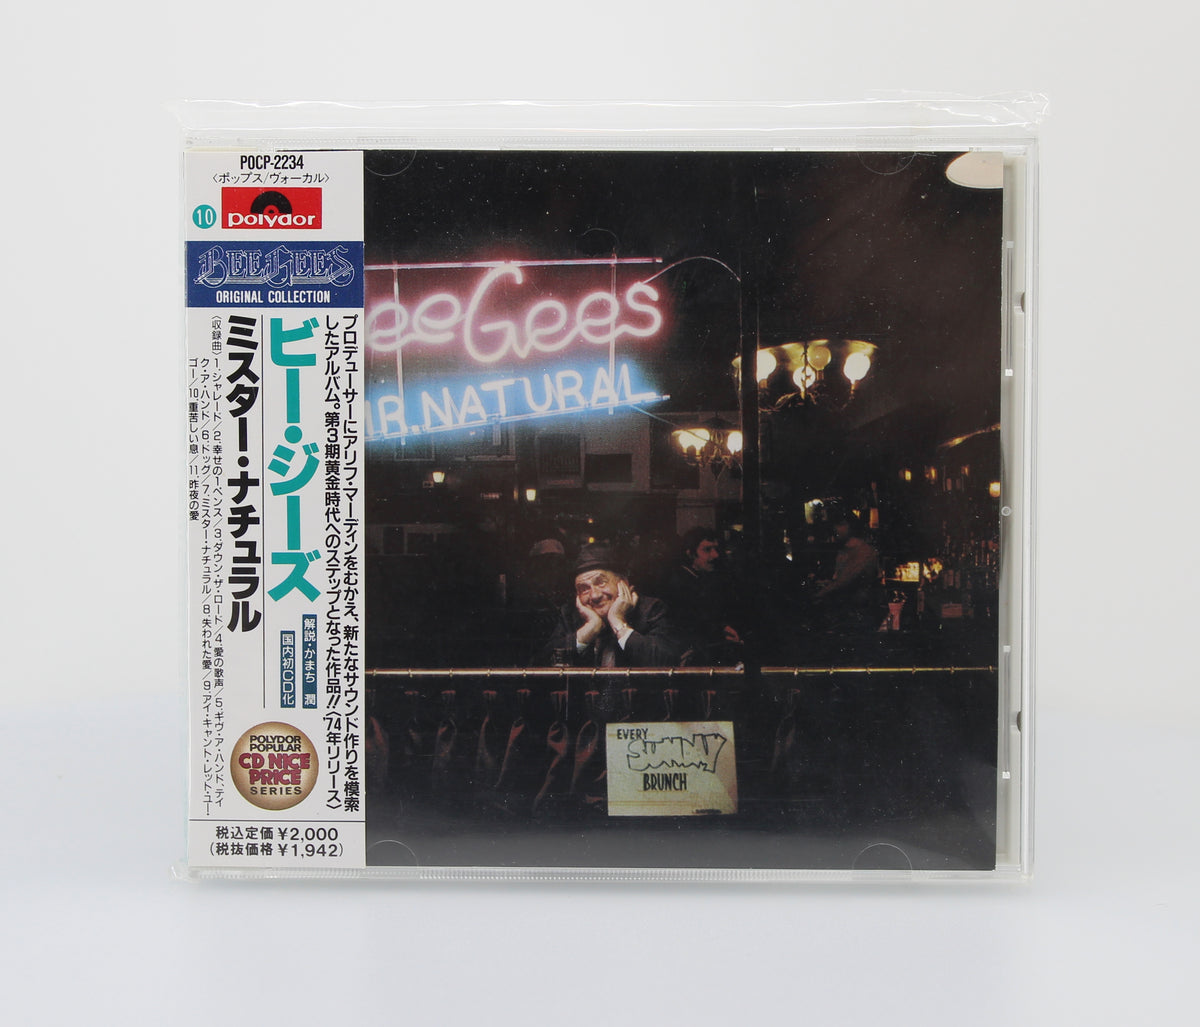 Bee Gees – Mr. Natural, CD, Album, Reissue, Japan 1992